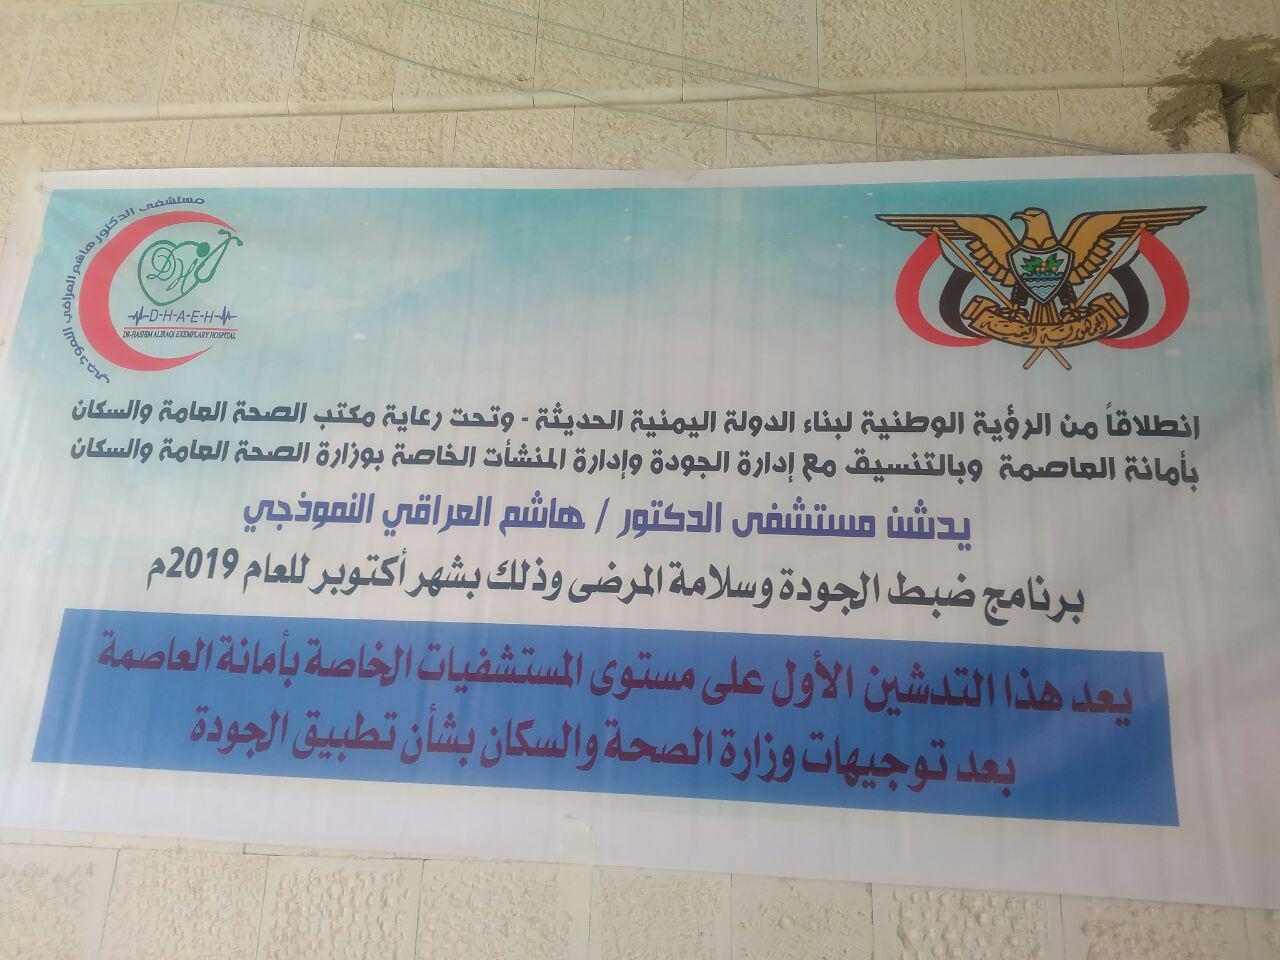 وزارة الصحة تدشن أولى خطوات برنامج الجودة من مستشفى “العراقي”